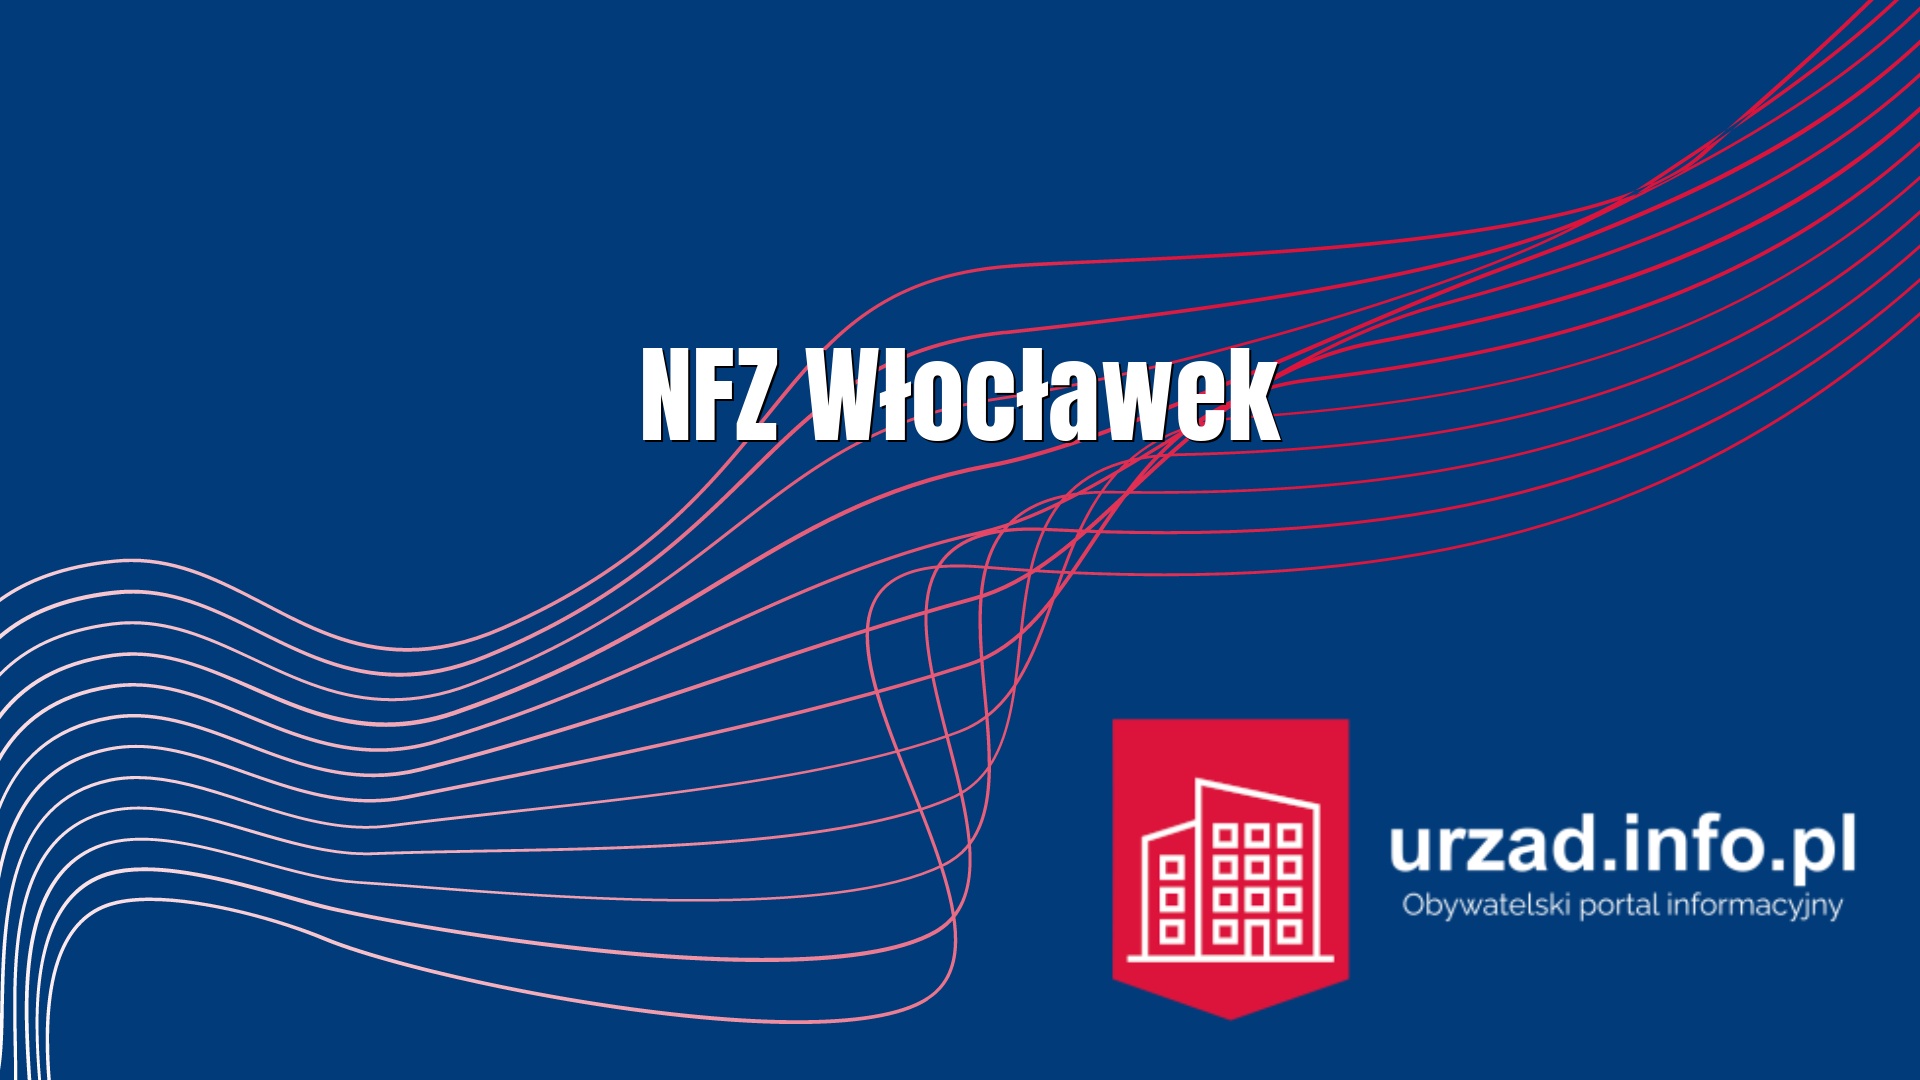 NFZ Włocławek - Narodowy Fundusz Zdrowia Delegatura we Włocławku